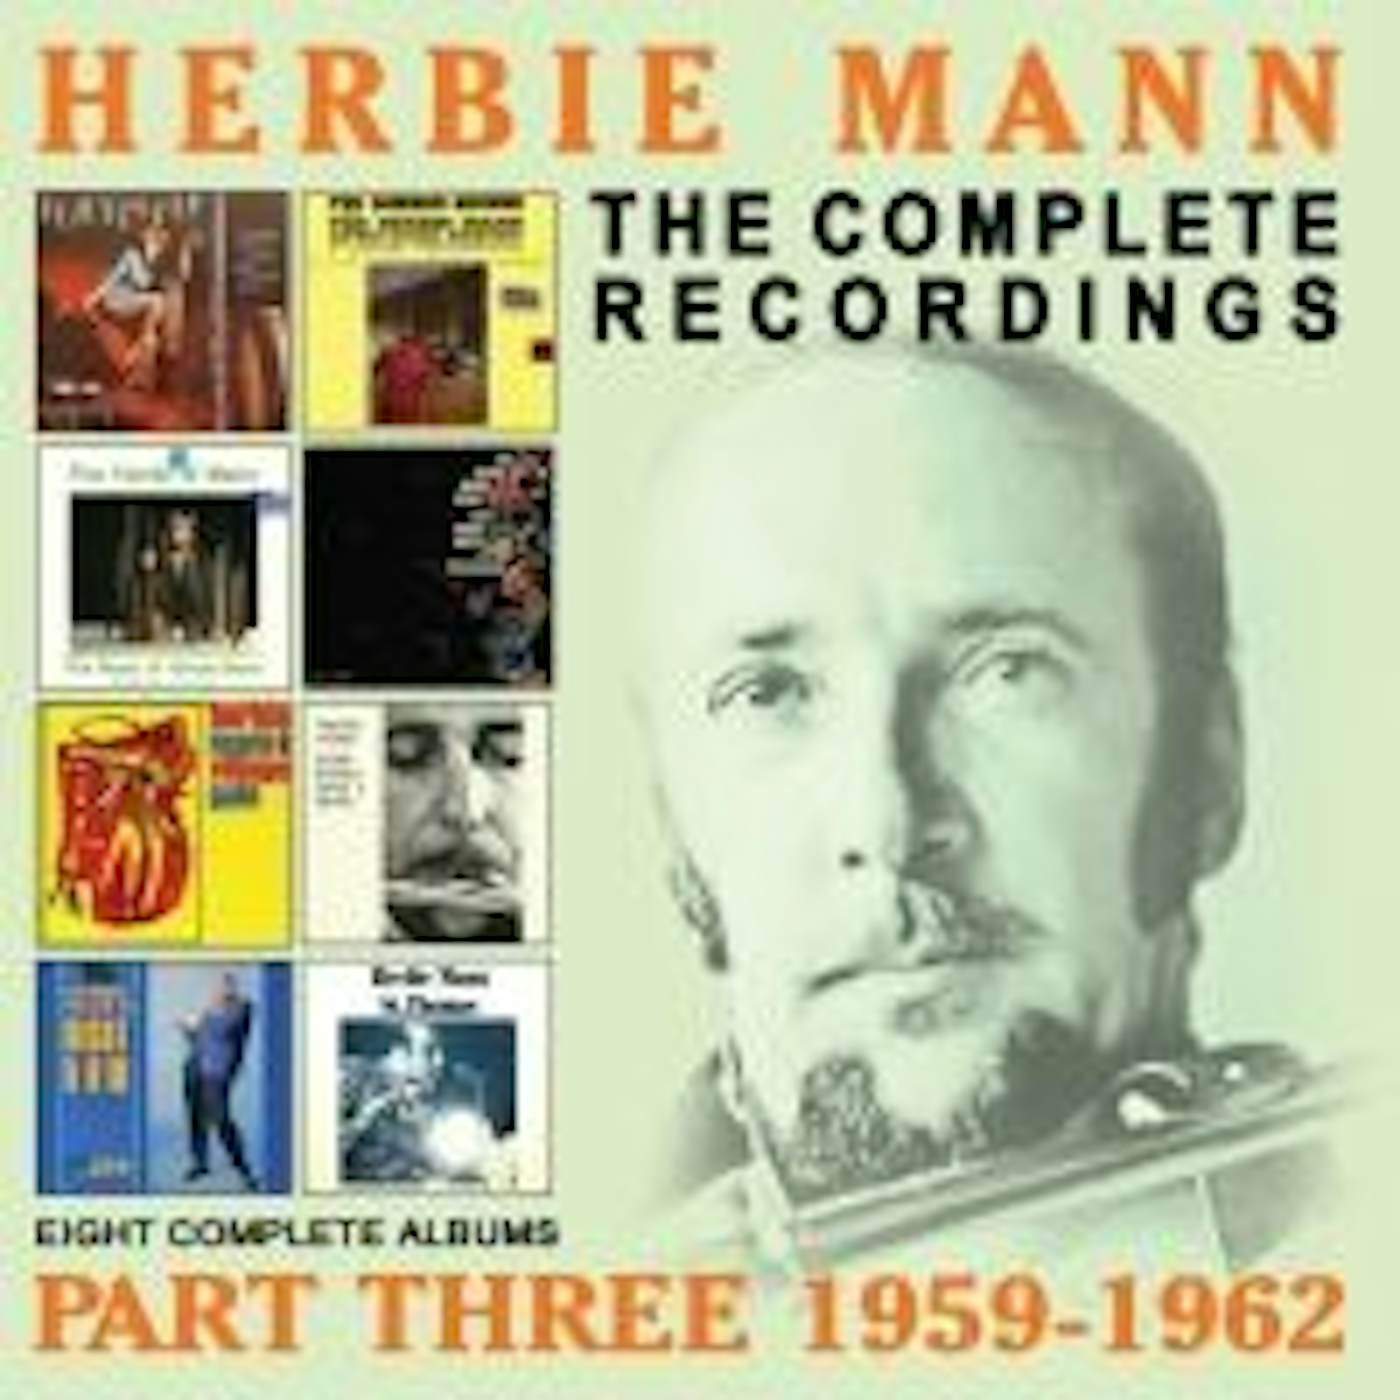 Herbie Mann COMPLETE RECORDINGS: 1959-1962 CD